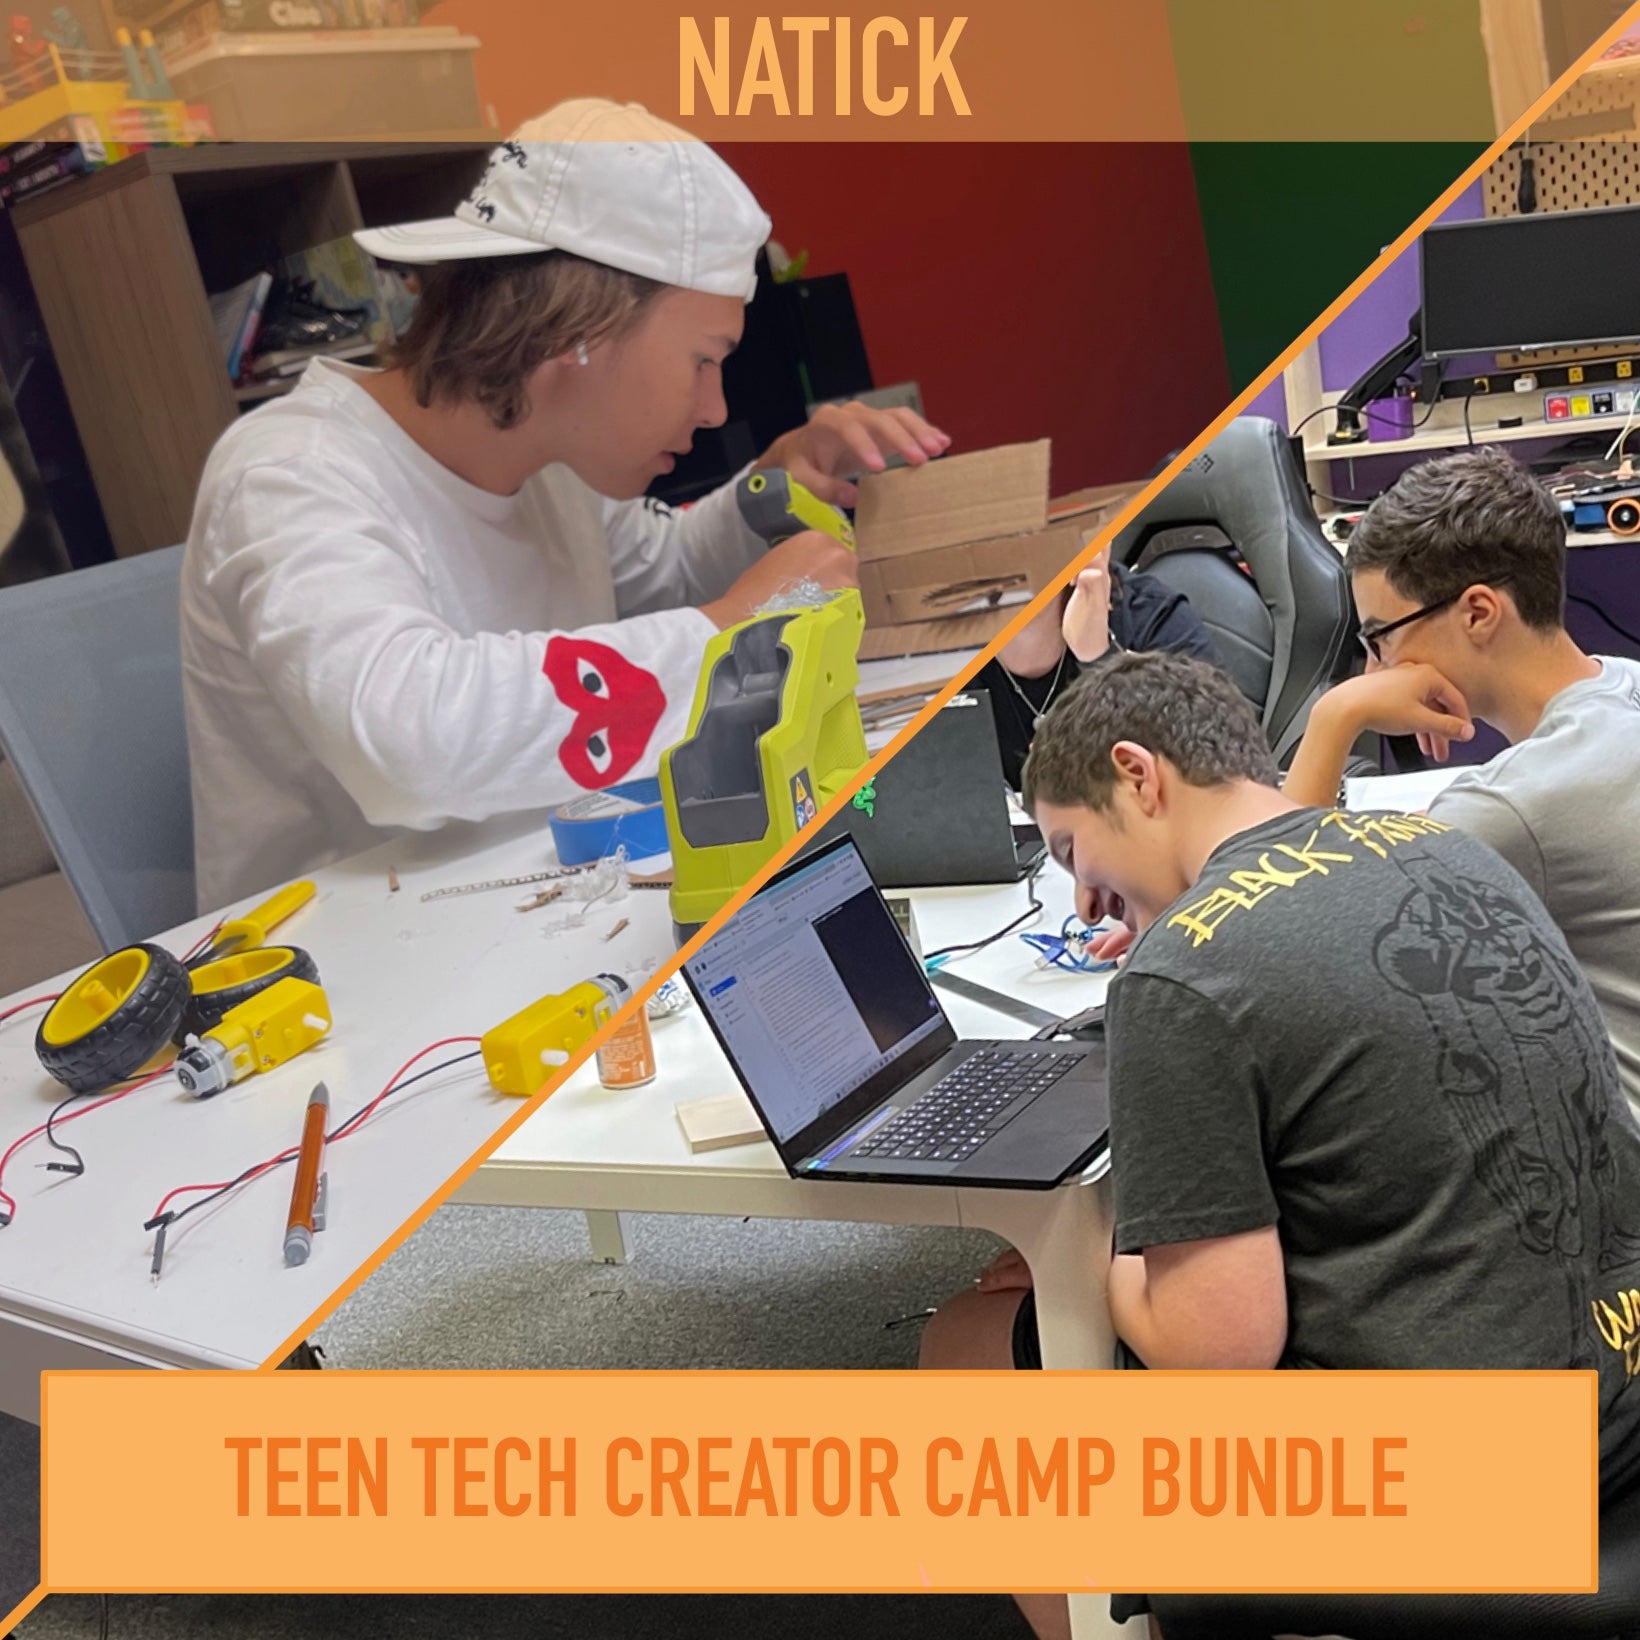 Teen Tech Creator Summer Camp Bundle (Natick)